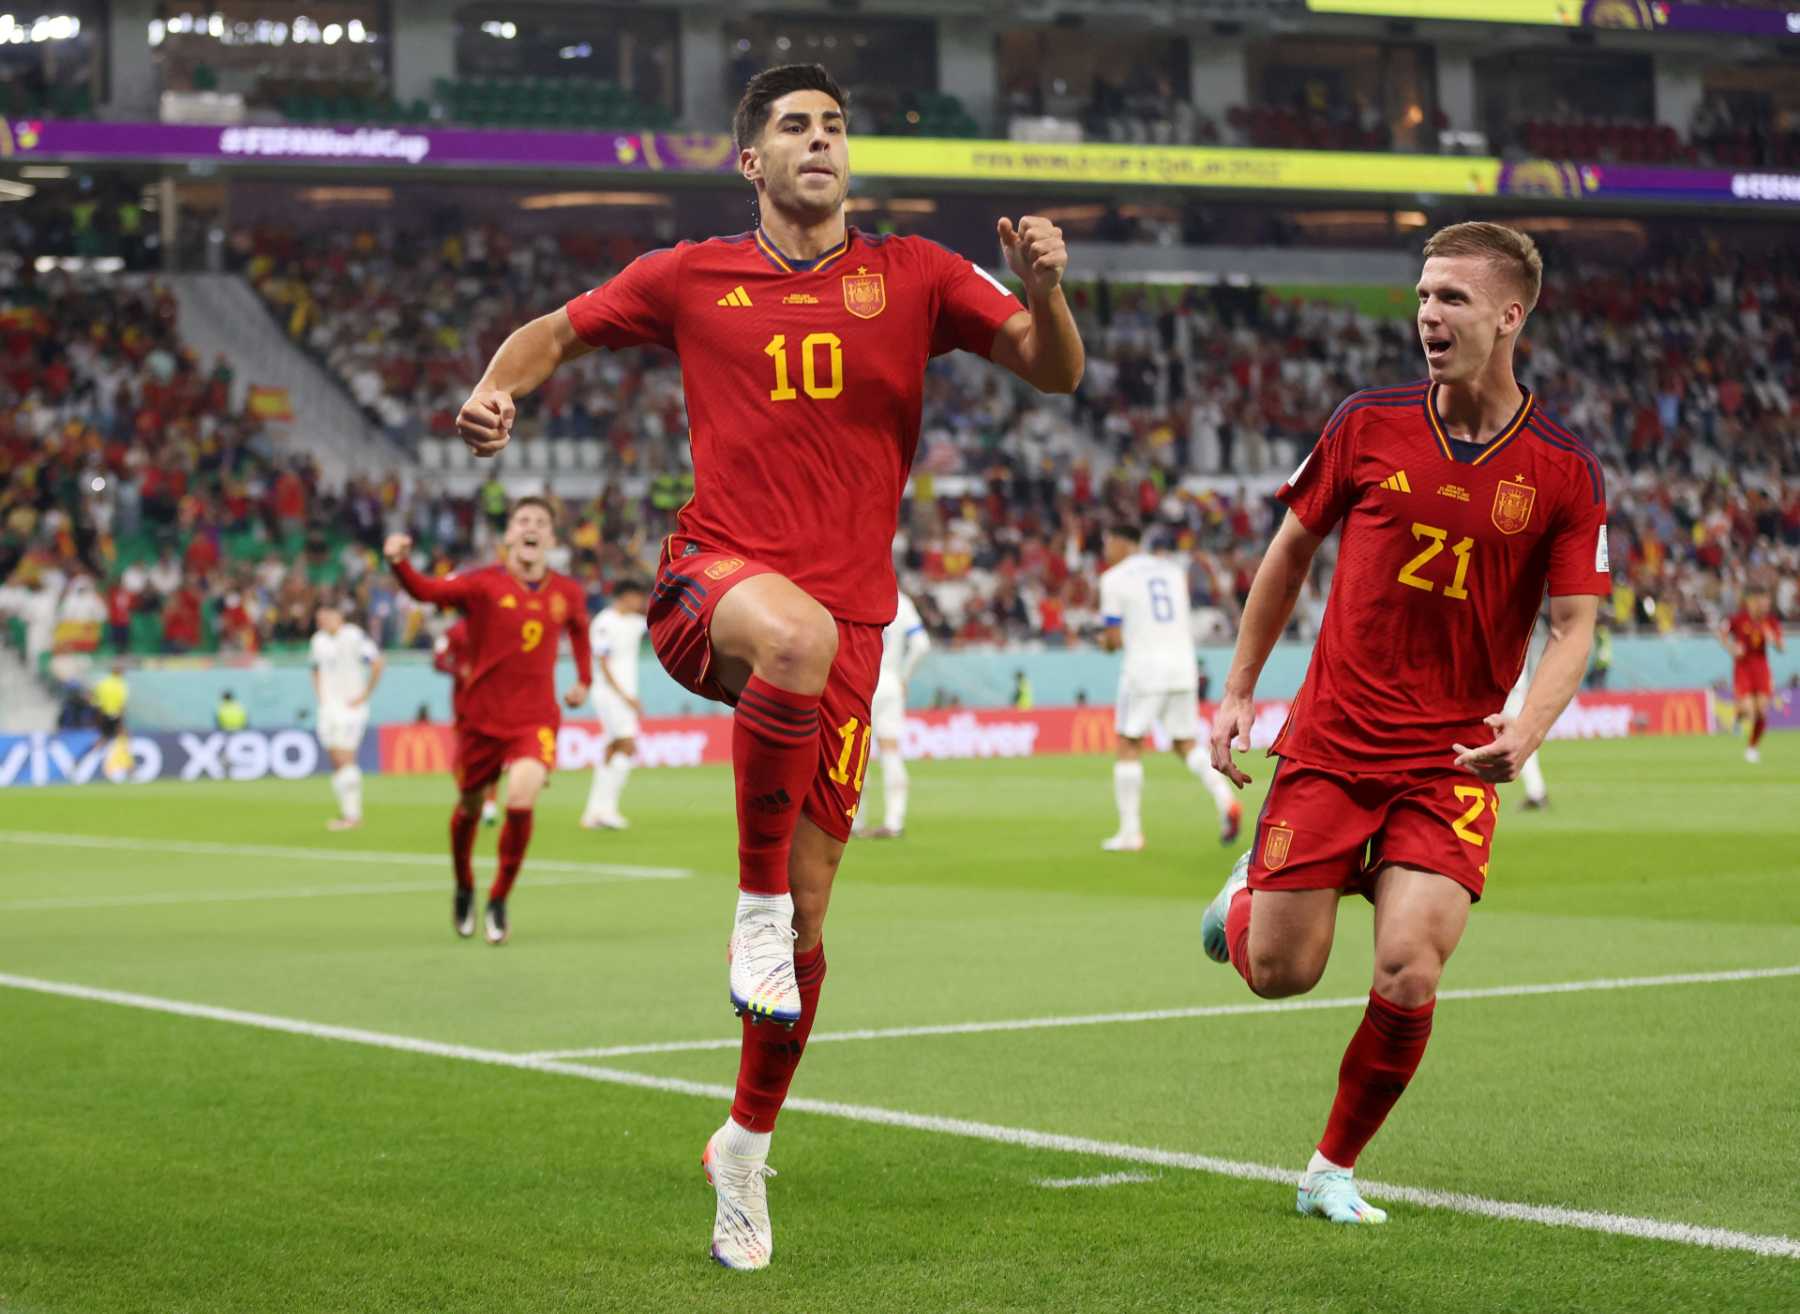 Resumo: Espanha 7-0 Costa Rica - Mundial 2022